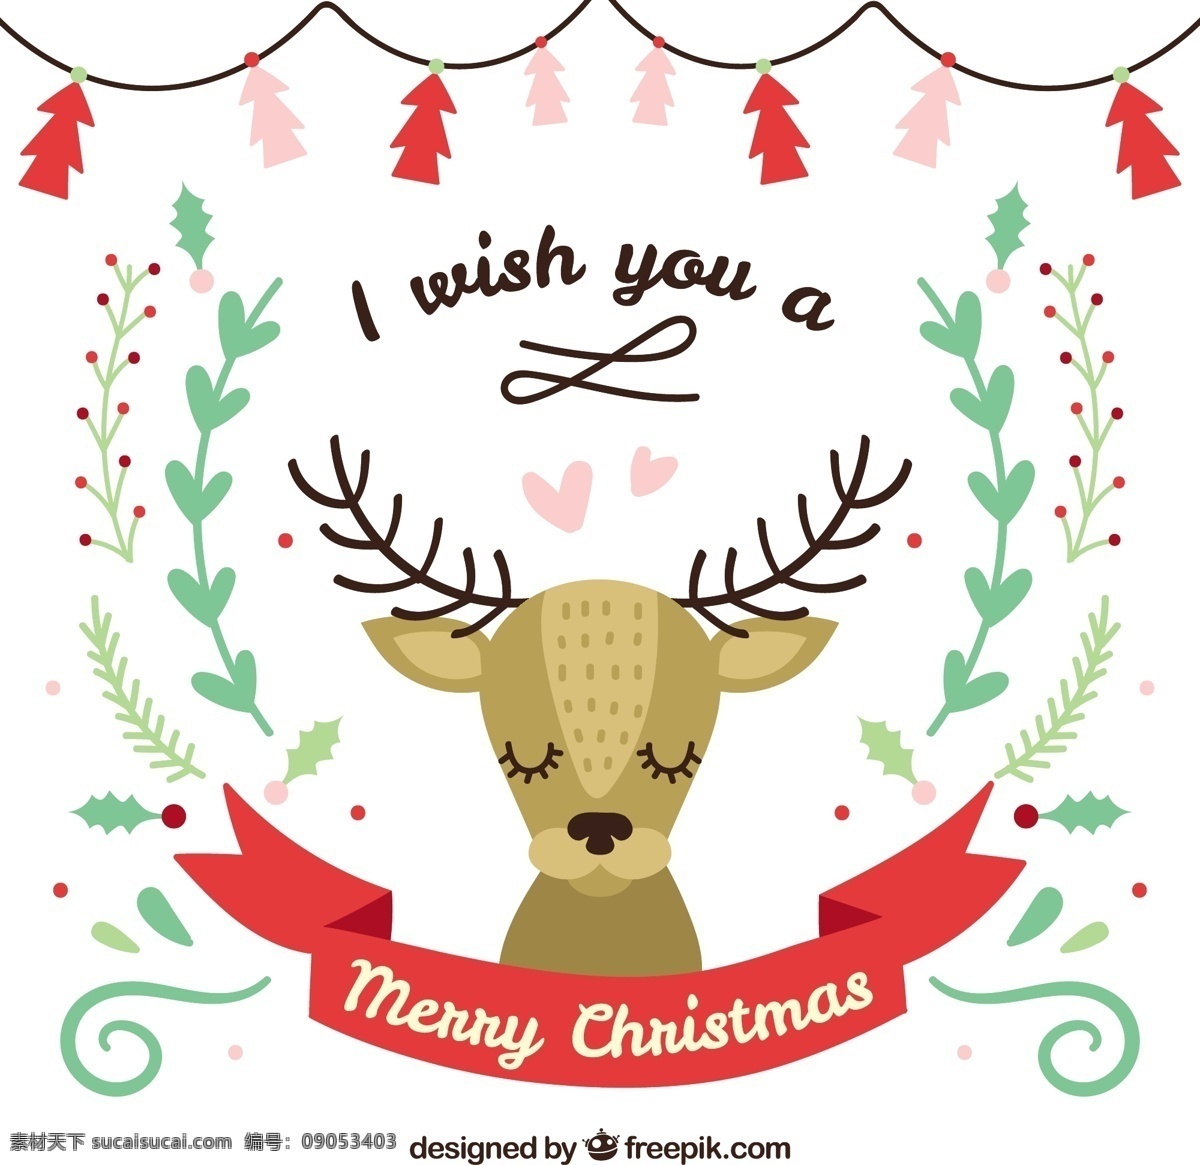 可爱 圣诞 驯鹿 卡 圣诞卡 动物 圣诞快乐 冬天快乐 庆祝 节日 节日快乐 贺卡 问候 可爱的动物 季节 白色